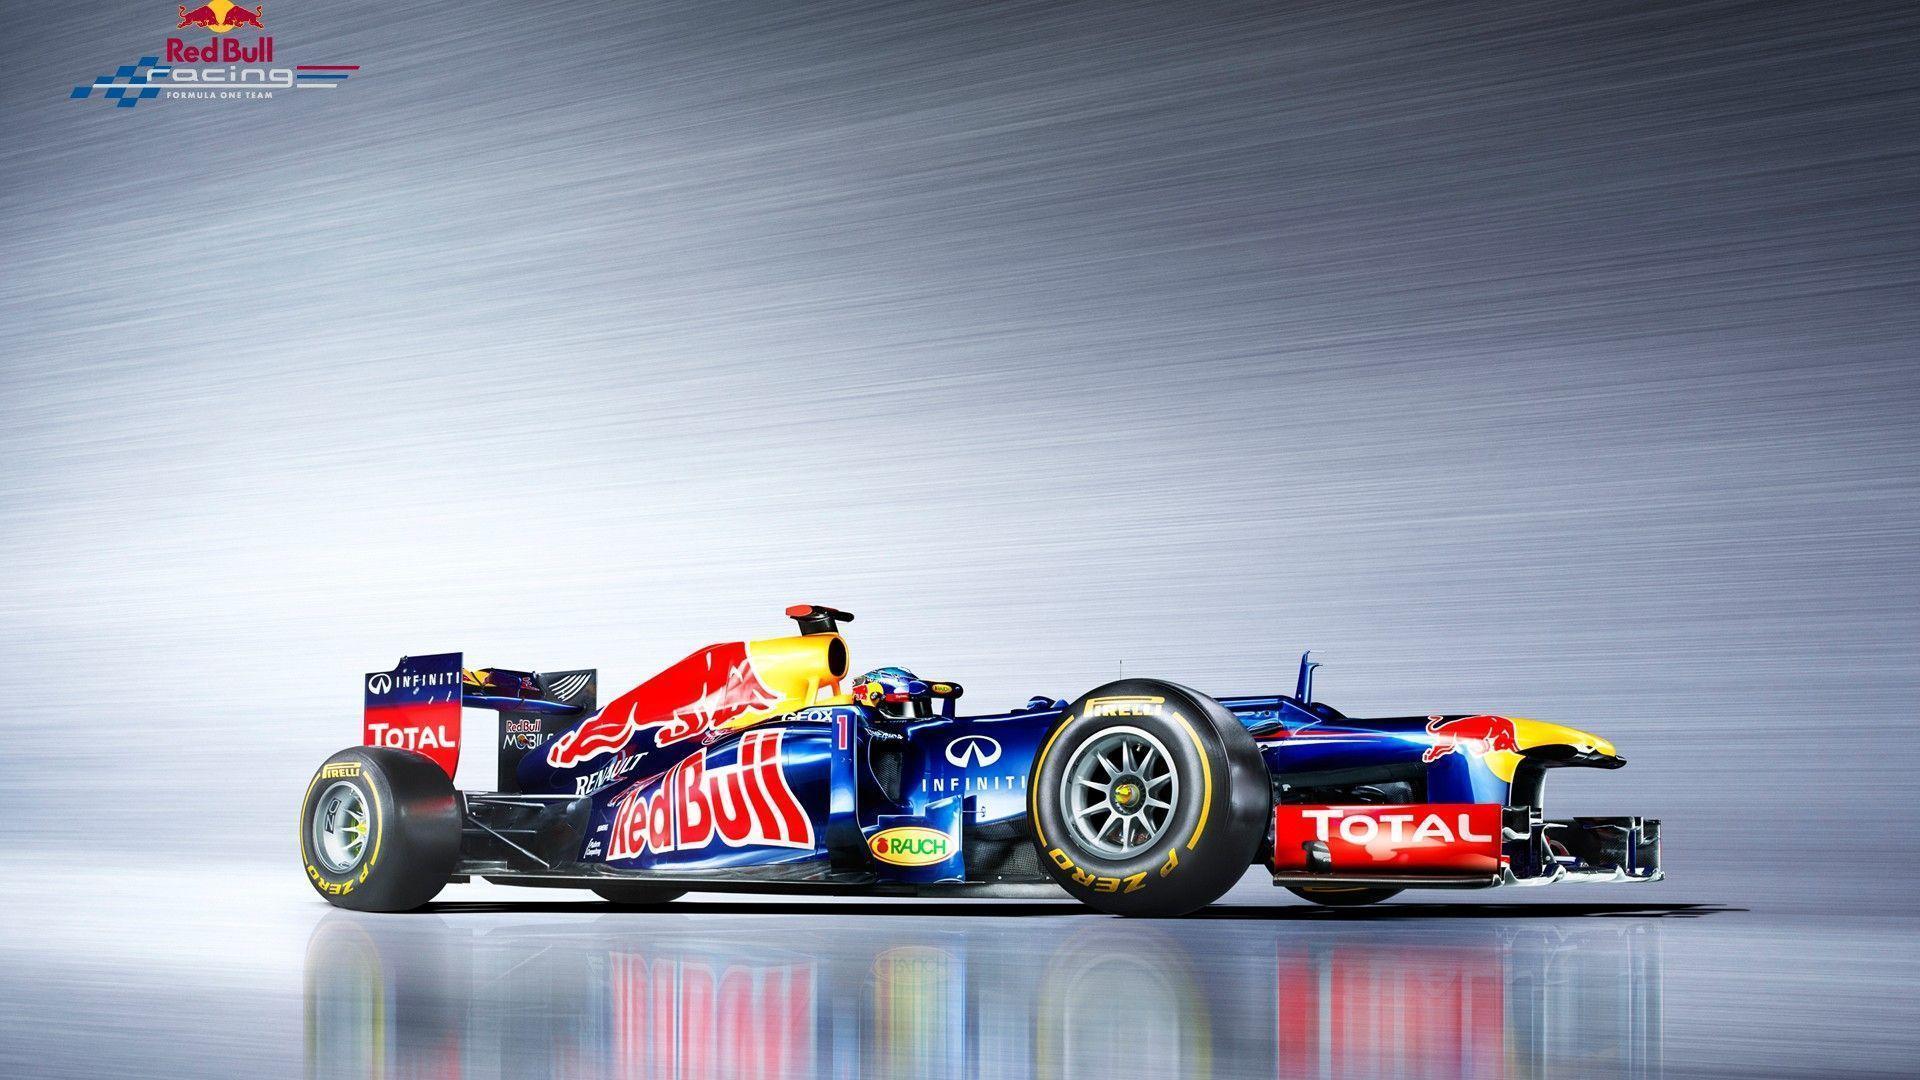 F1 Car wallpaperx1080